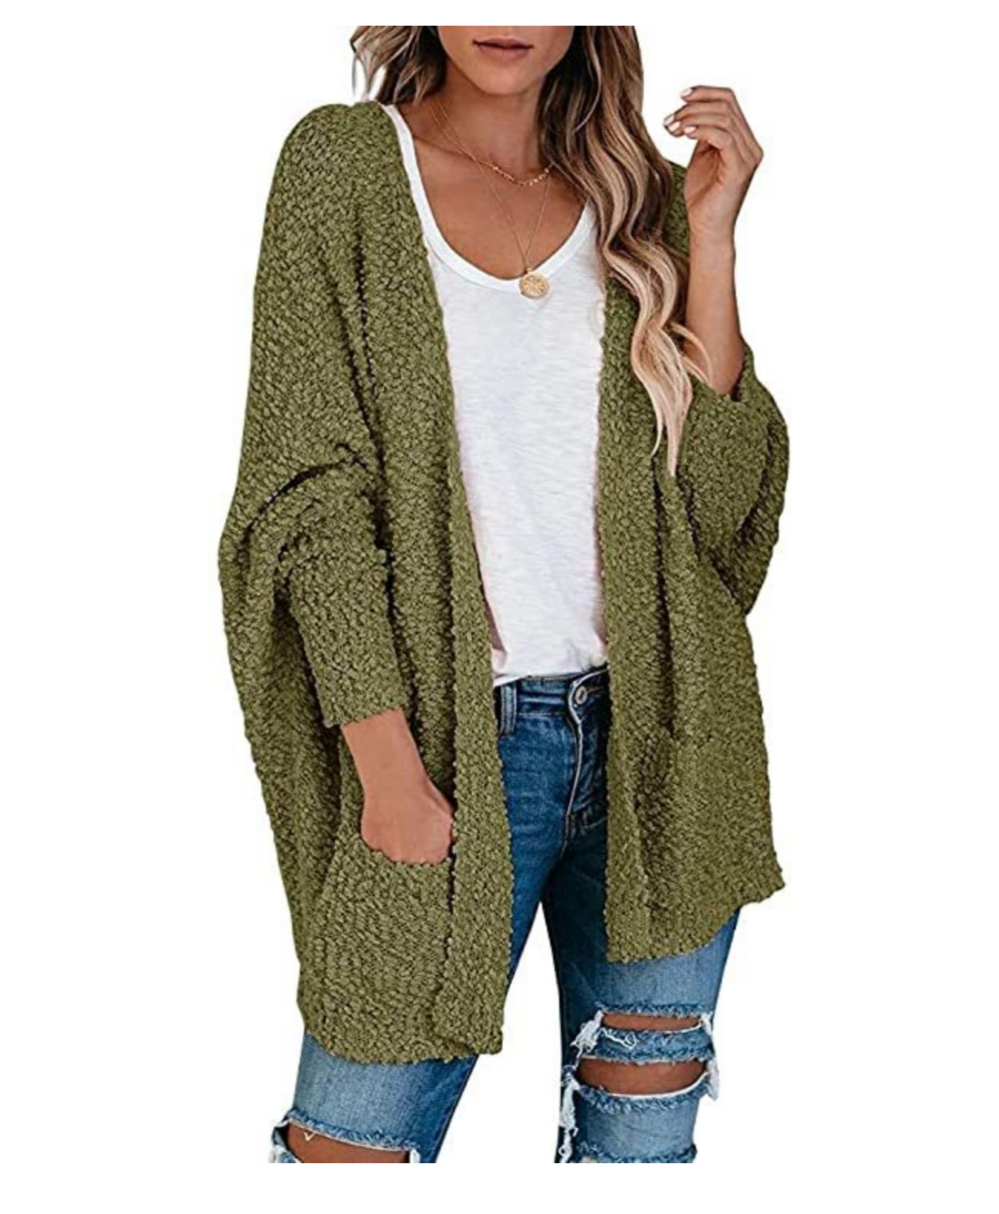 Amazon Fashion ~ Fall Sweaters - Uplifted Beauty